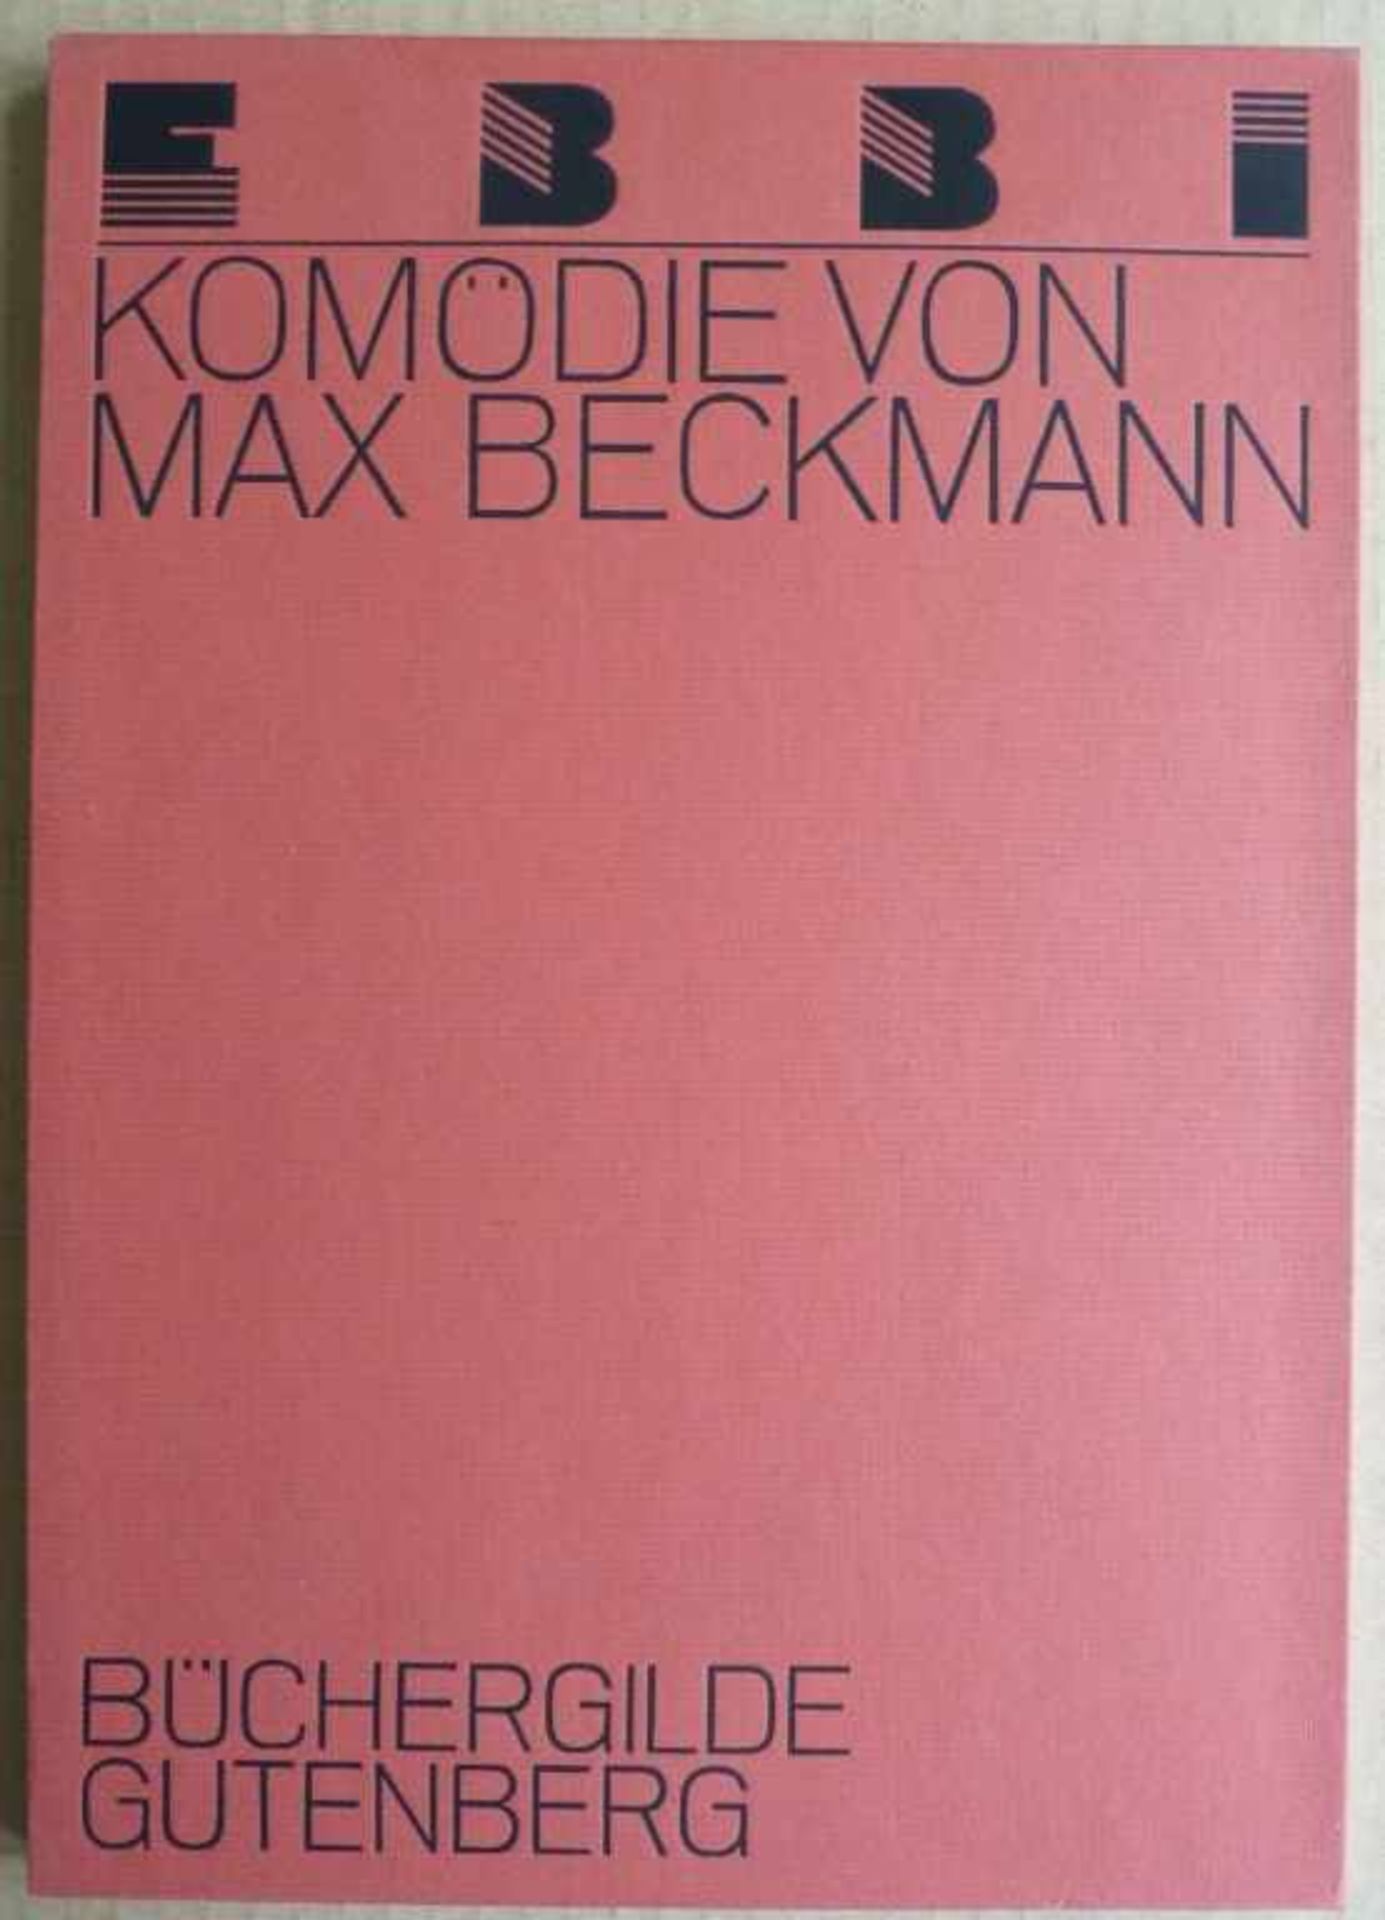 BECKMANN, MAX: "Ebbi", 192444 Seiten: Reproduktionen der sechs Radierungen zum eigenen Text von